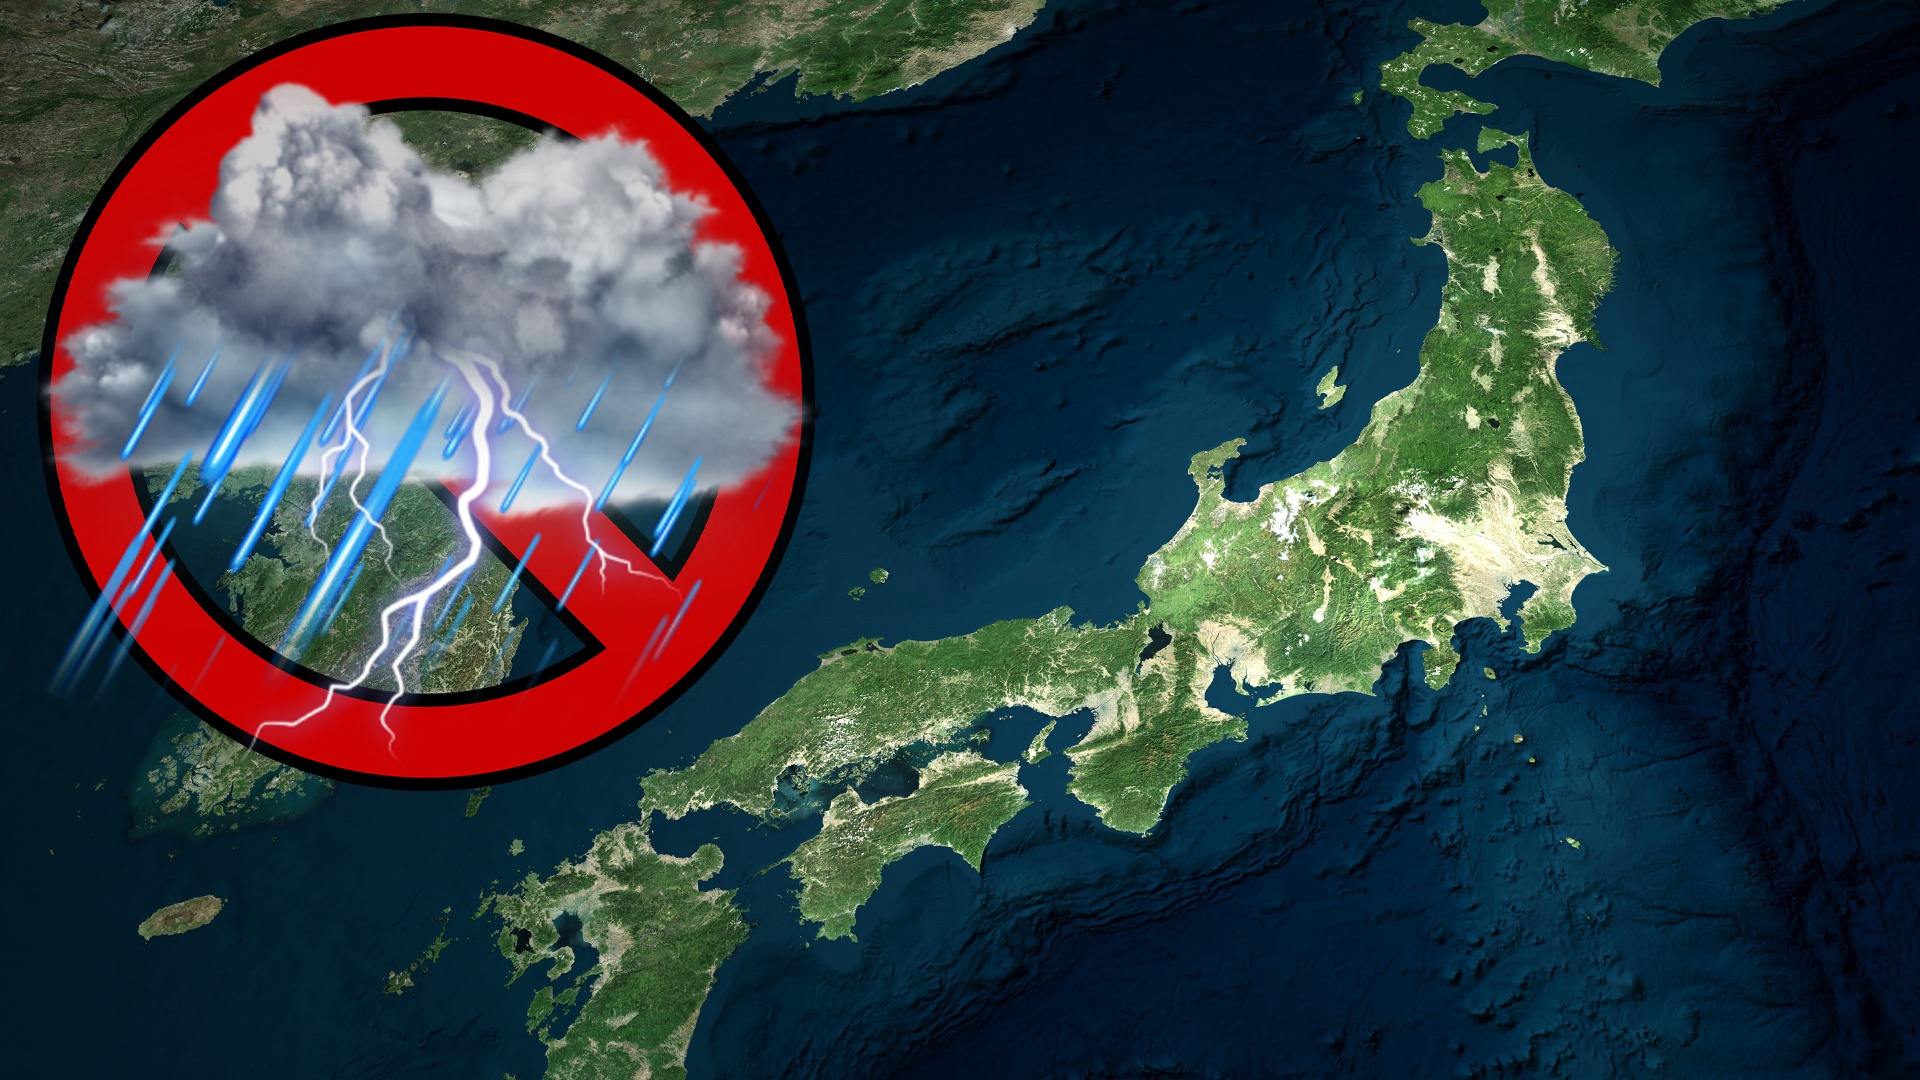 #Japan will das Wetter beeinflussen, um sich vor Naturkatastrophen zu schützen